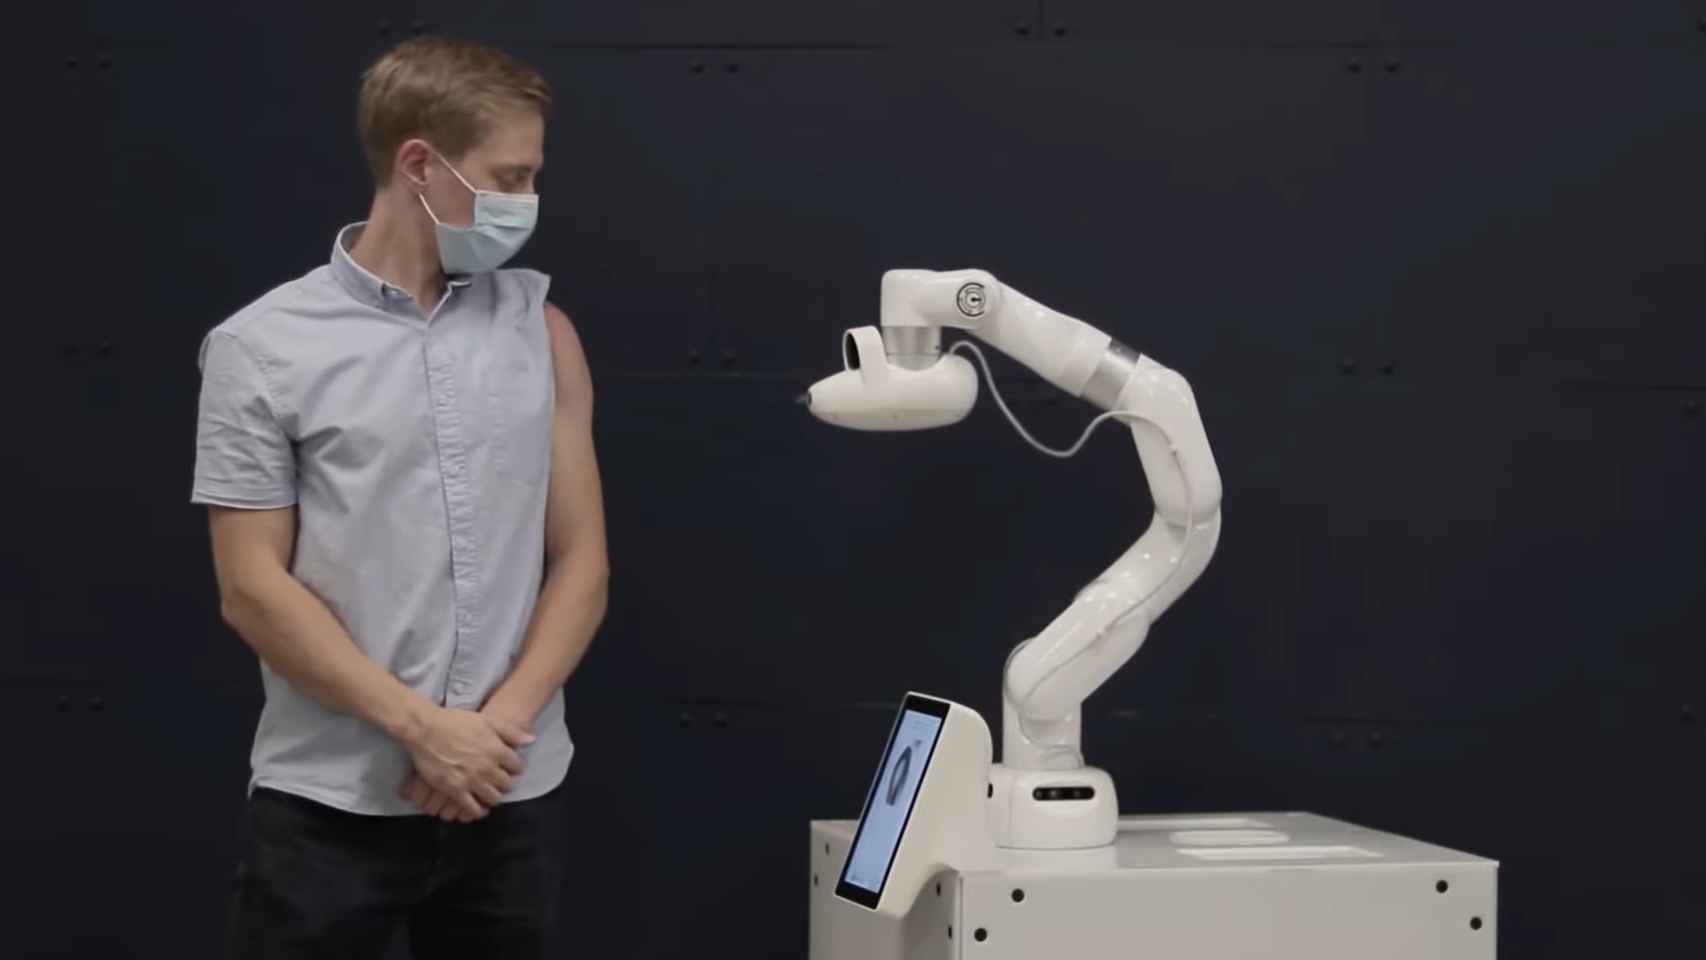 El robot Cobi aplica vacunas sin agujas